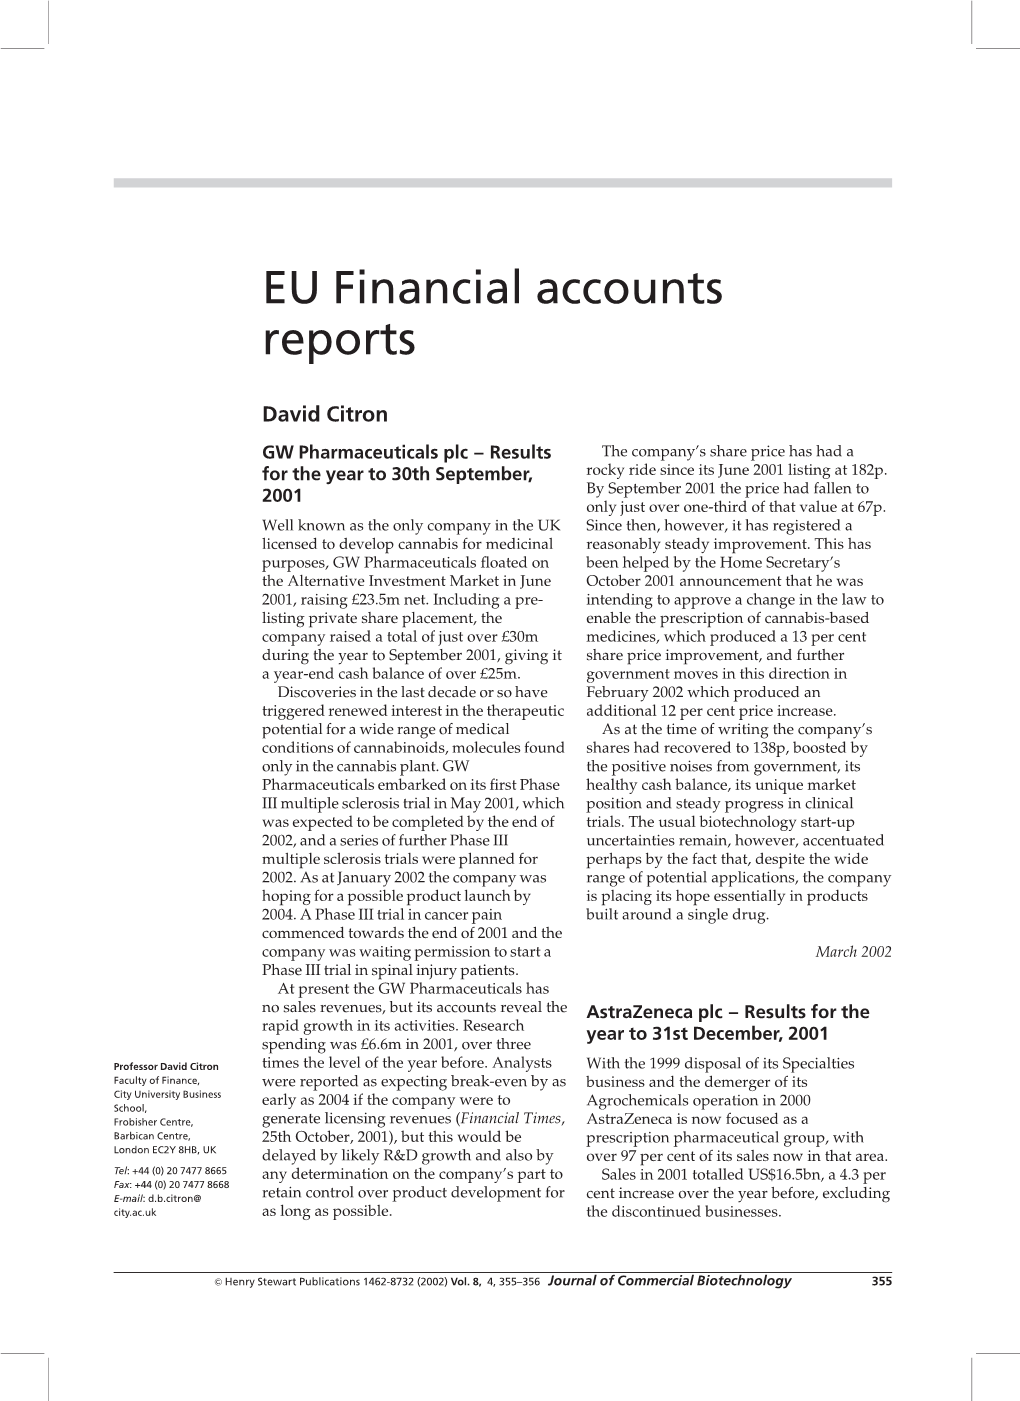 EU Financial Accounts Reports